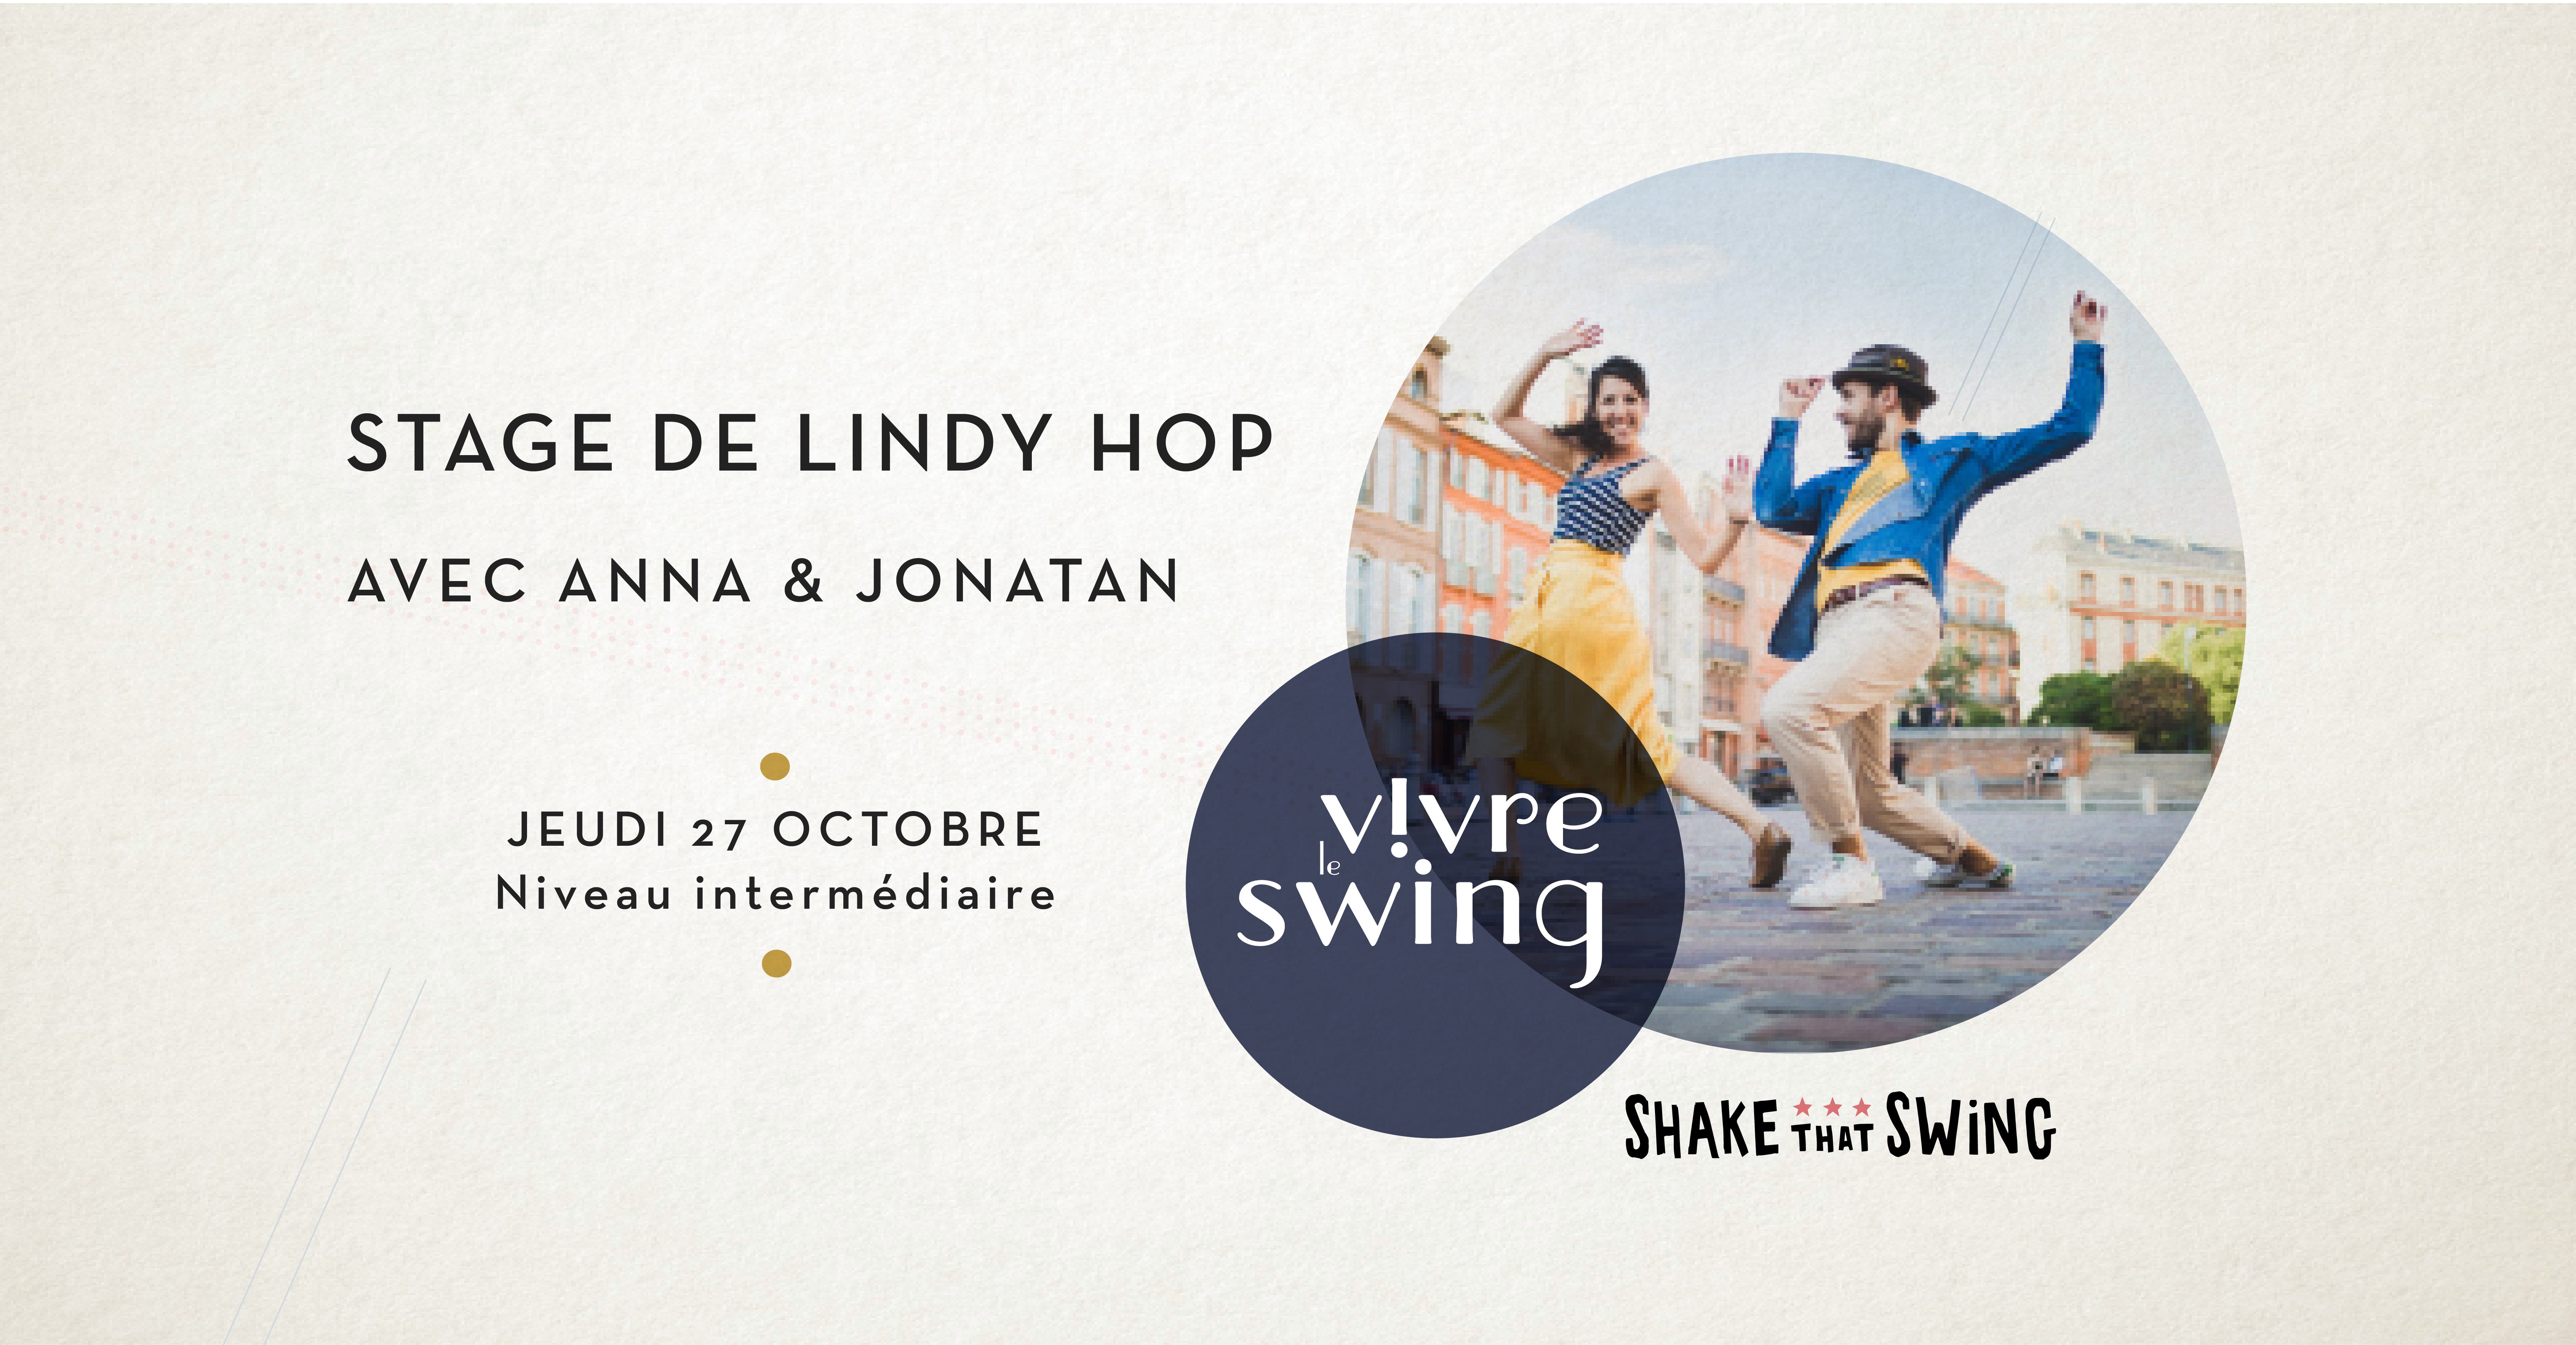 Stage de lindy hop avec Anna & Jonatan - 27 octobre